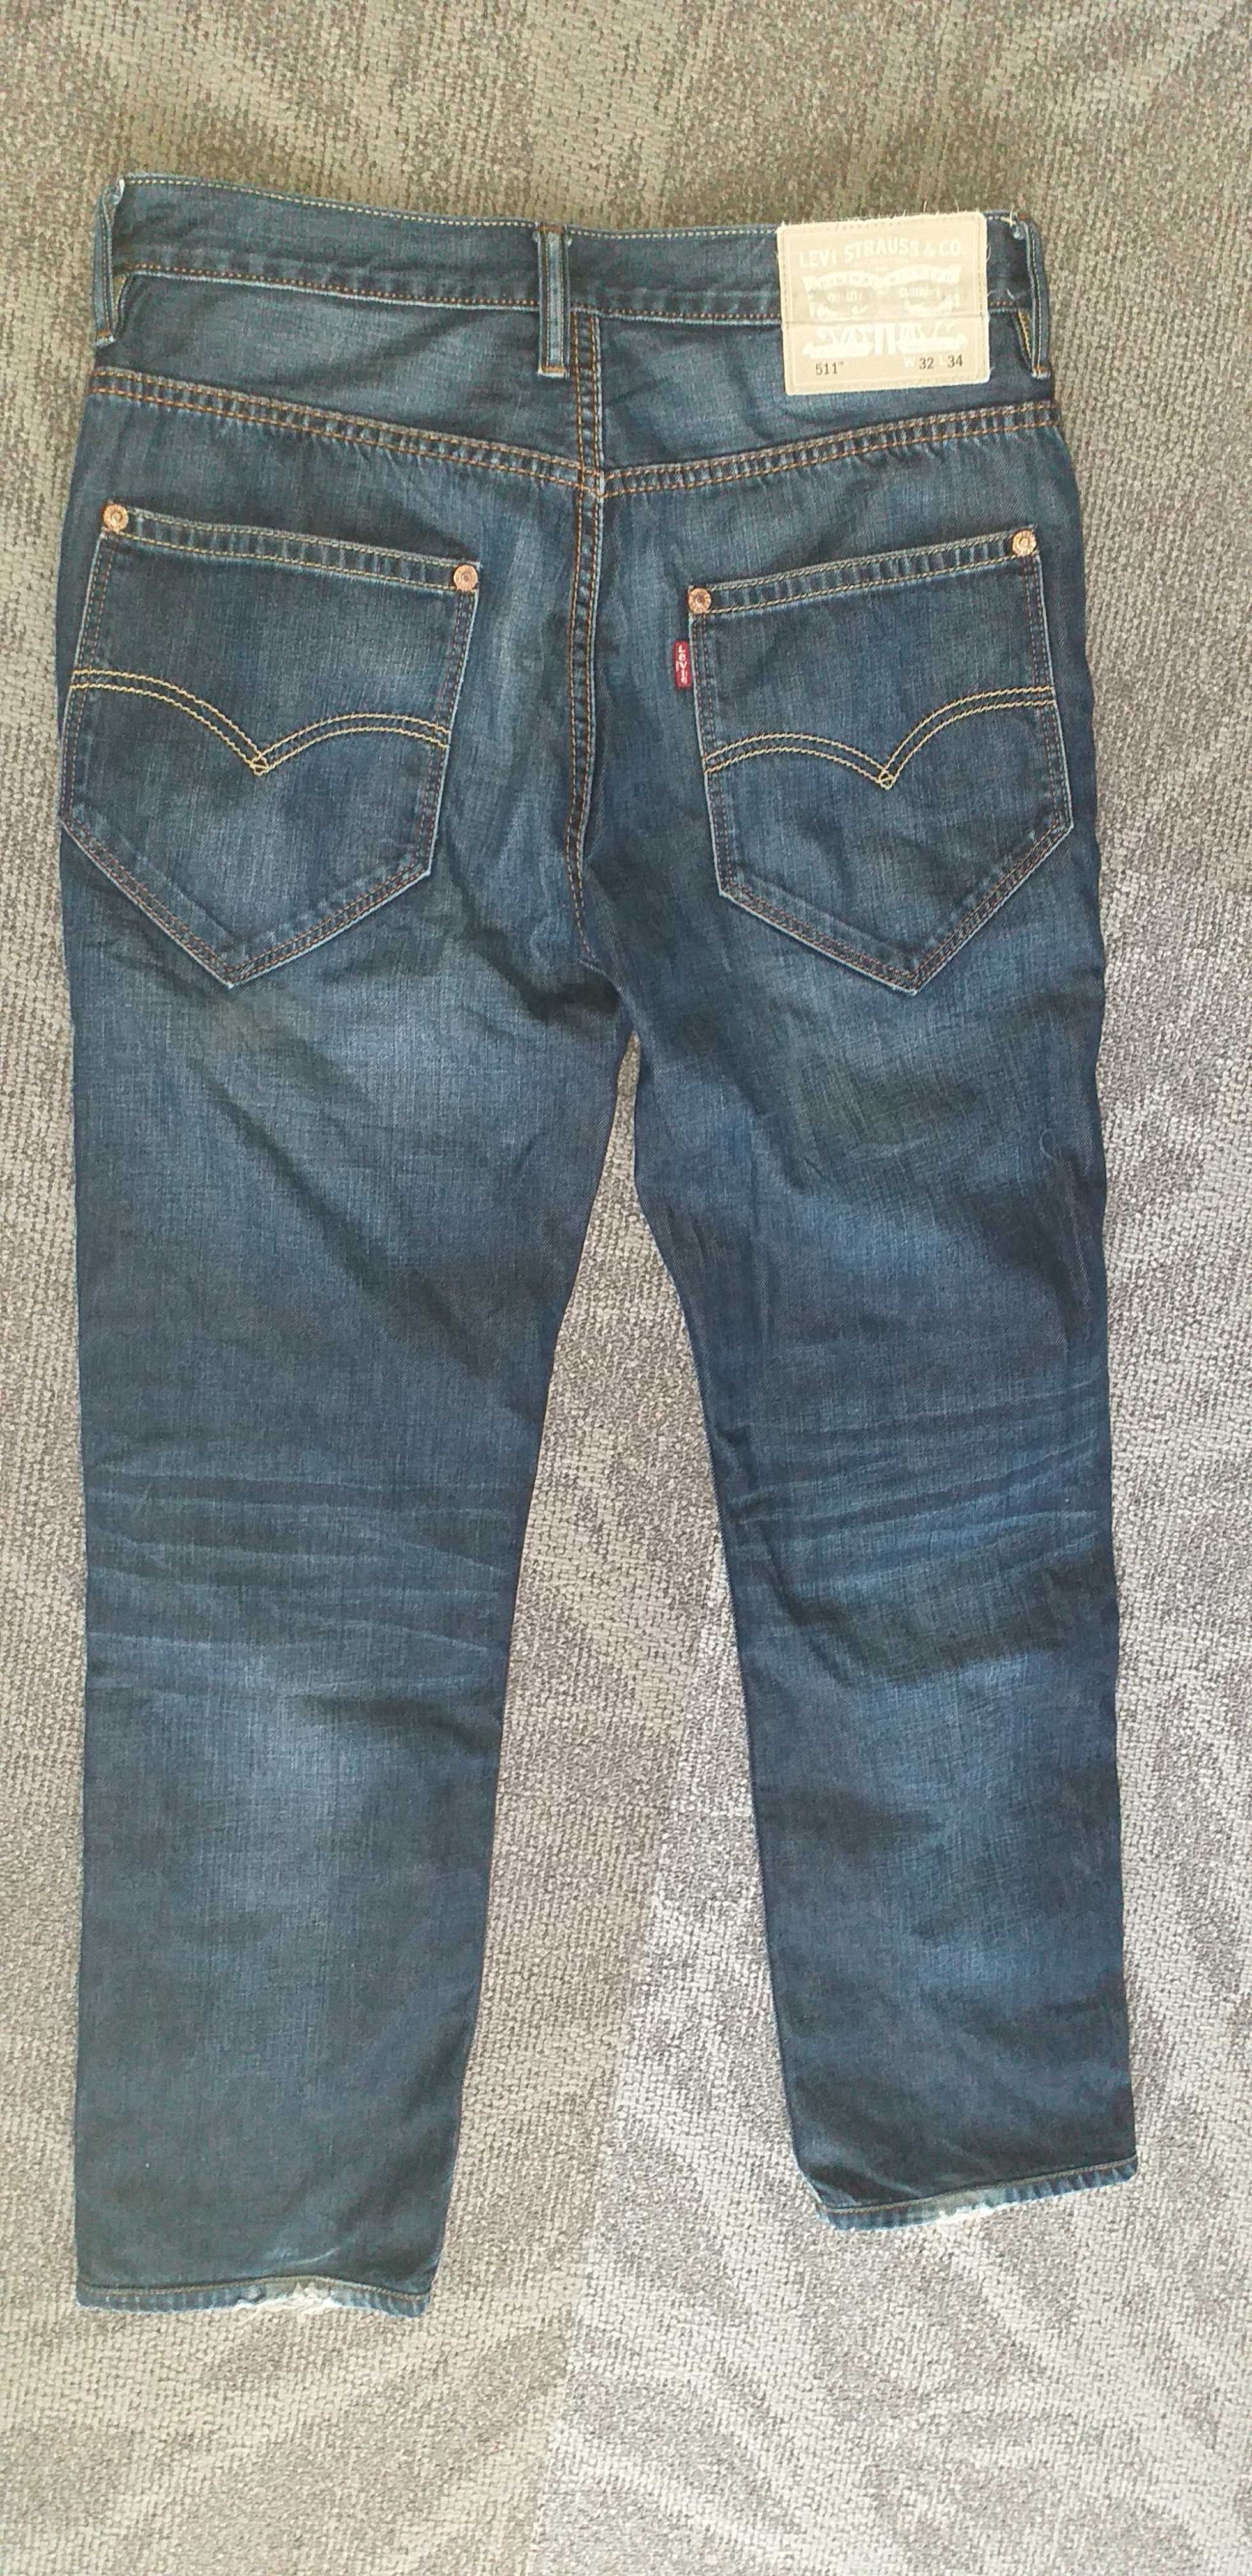 Levis 511 Spodnie jeans męskie roz W32L34